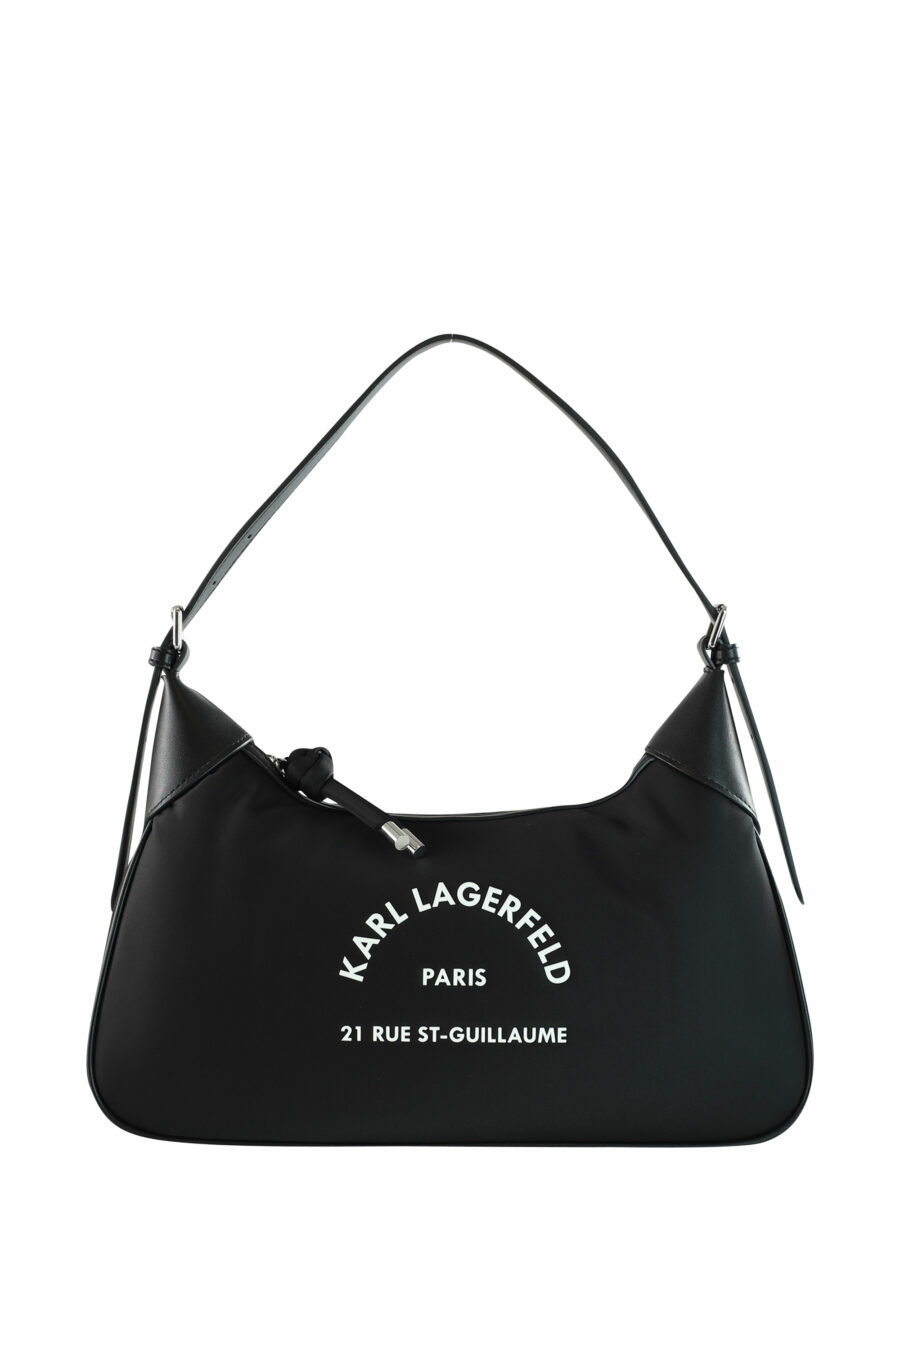 Black shoulder bag with "rue st guillaume" logo - 8720744103899